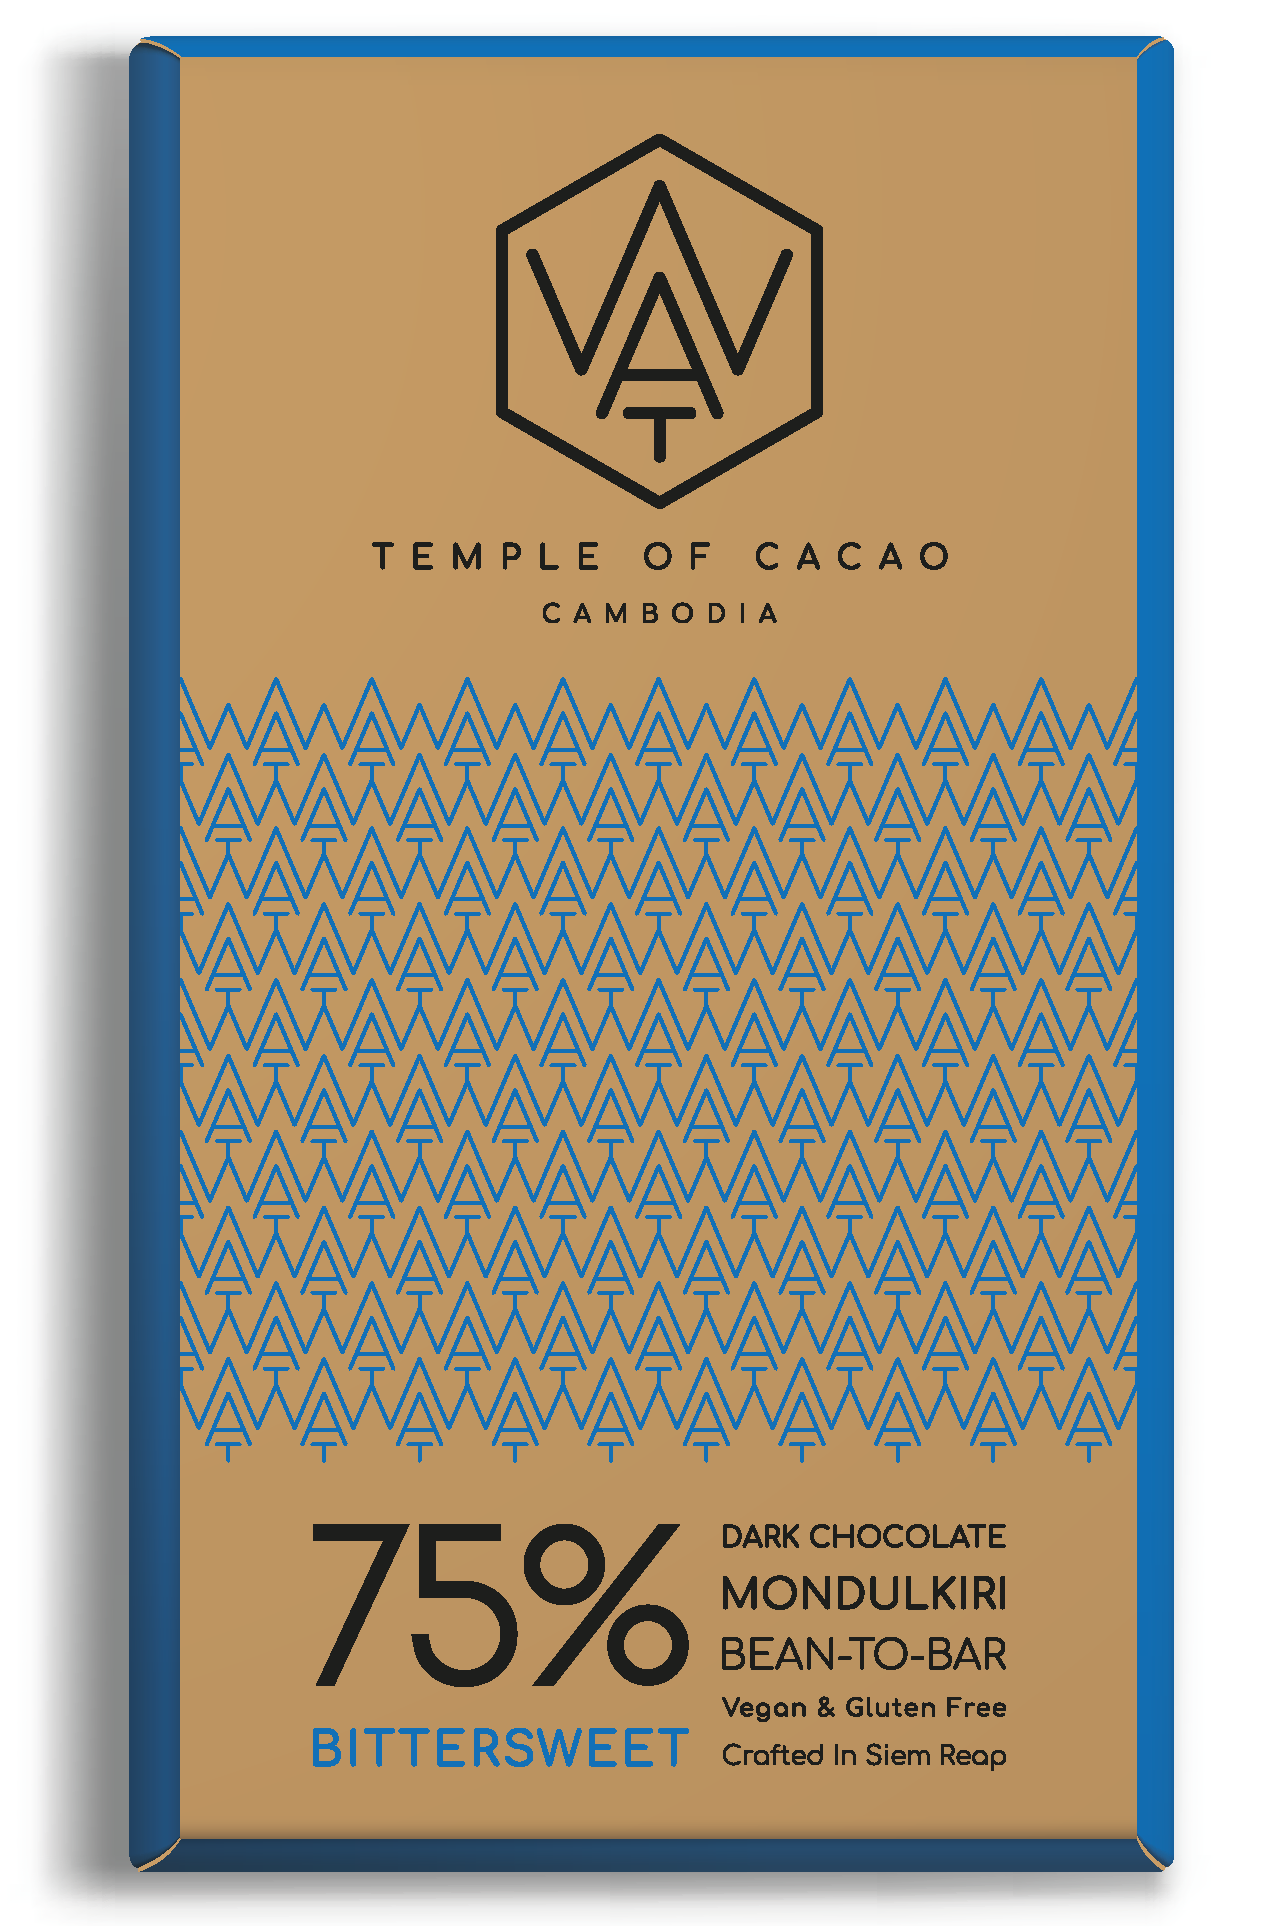 WAT Chocolate čokoláda z Kambodže 75% Bittersweet 70g